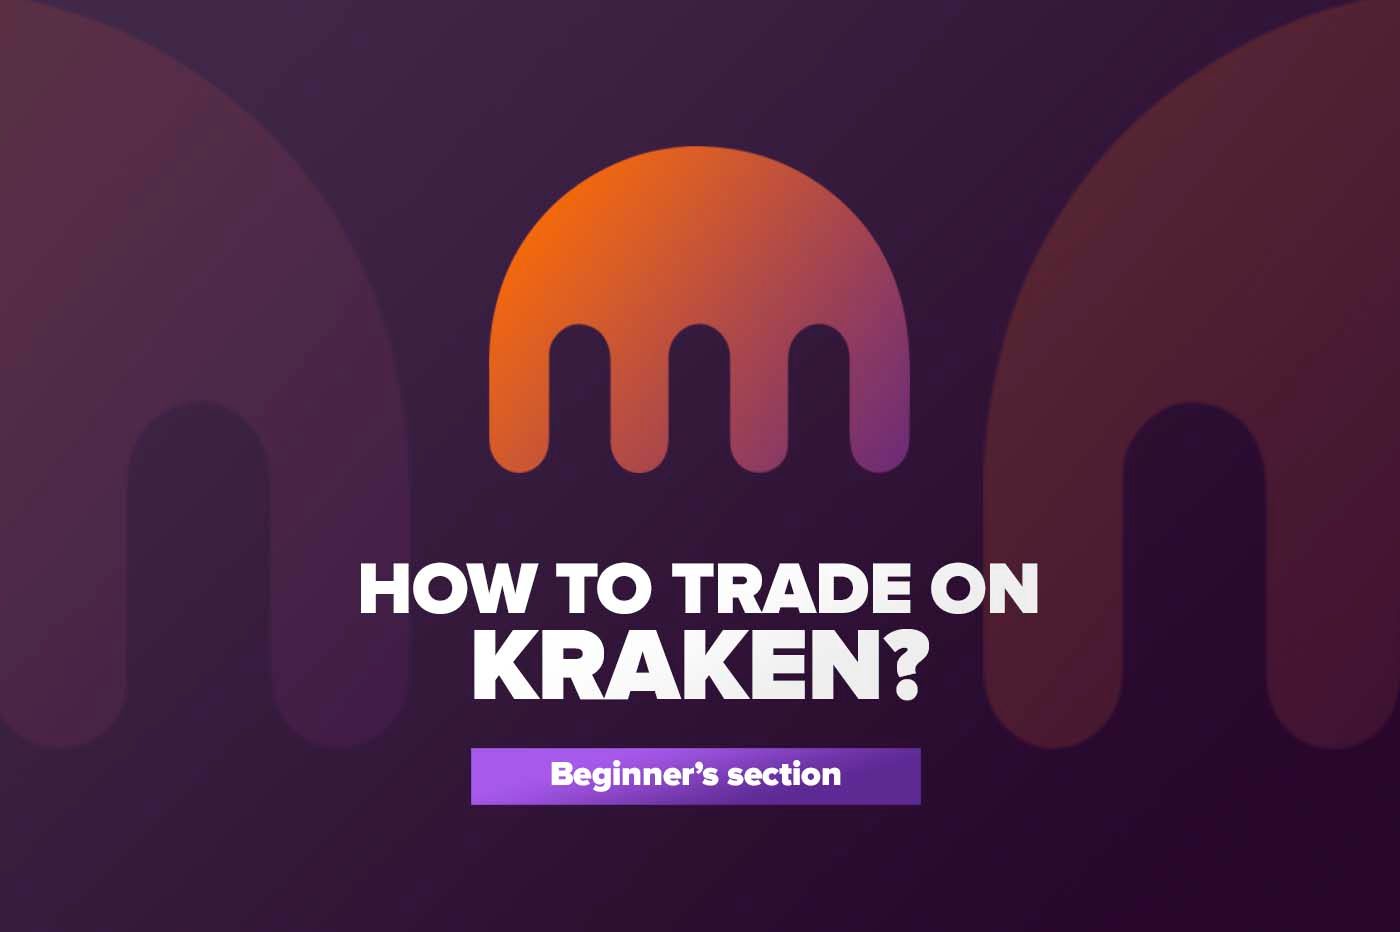 How to trade on Kraken?